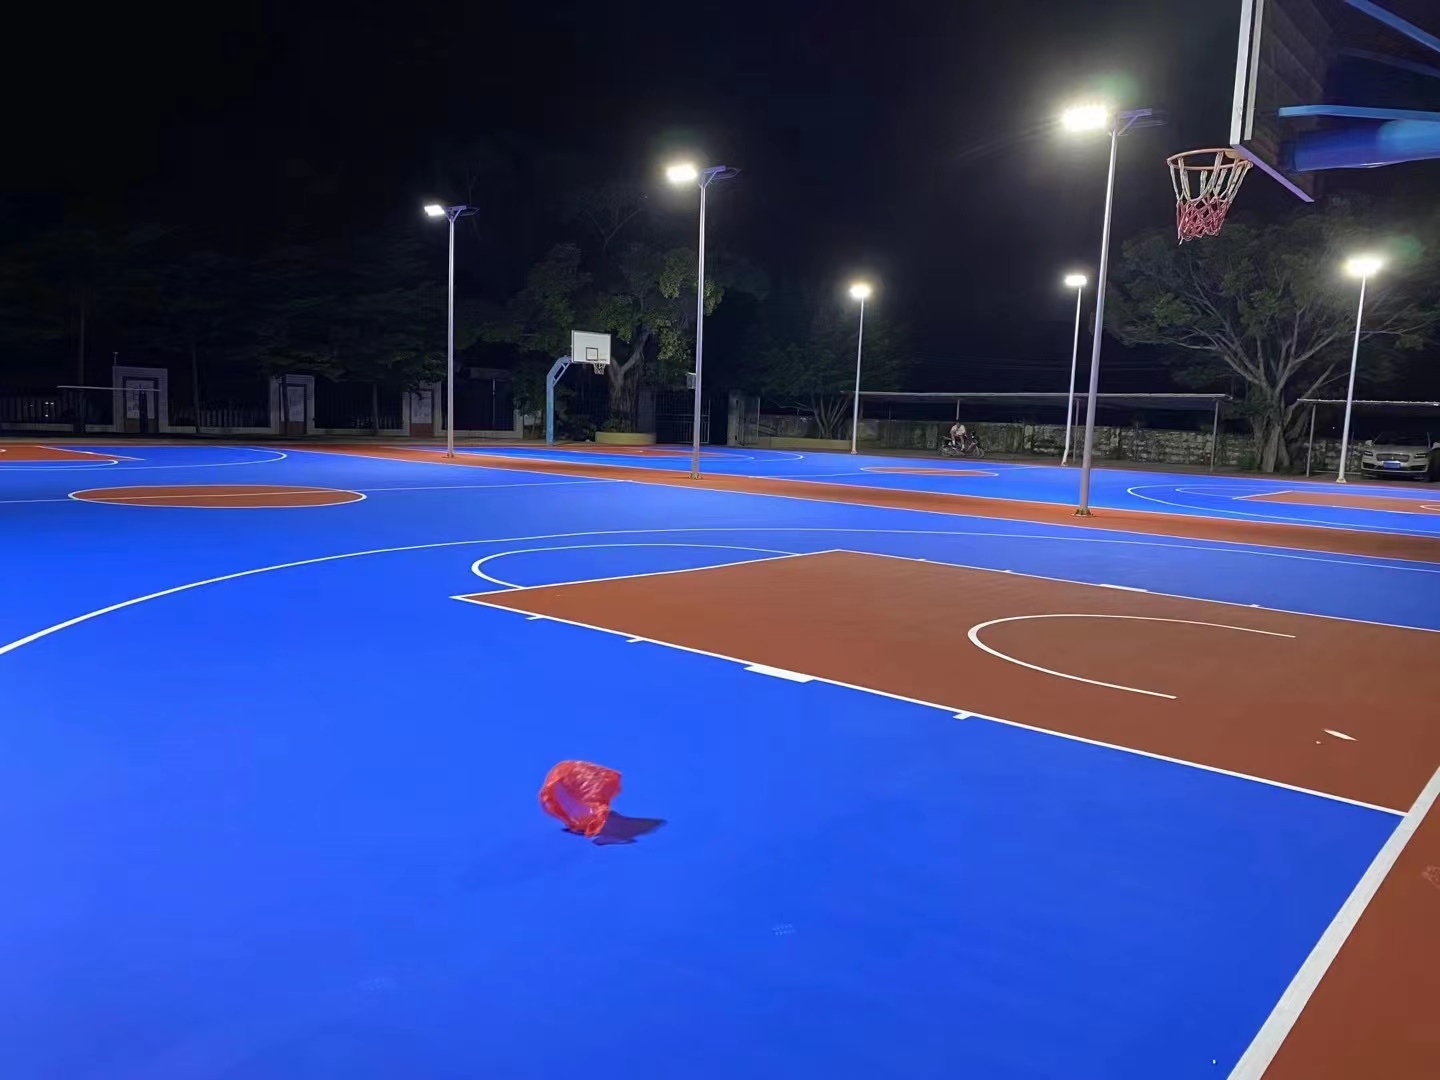 籃球場